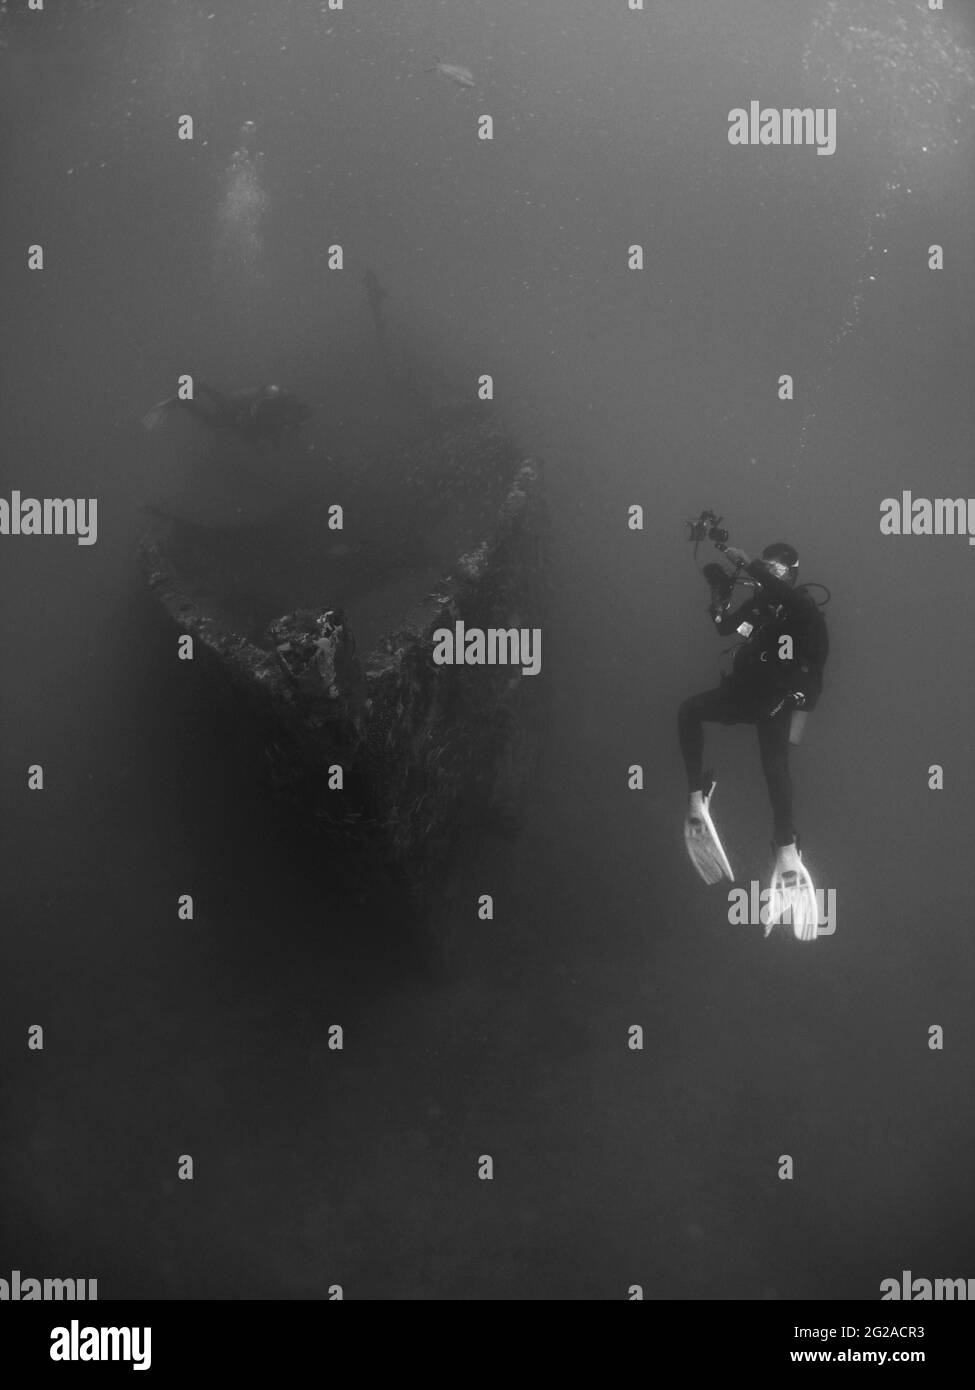 Prise de vue verticale en niveaux de gris de plongeurs explorant sous l'eau près des ruines d'un bateau submergé Banque D'Images